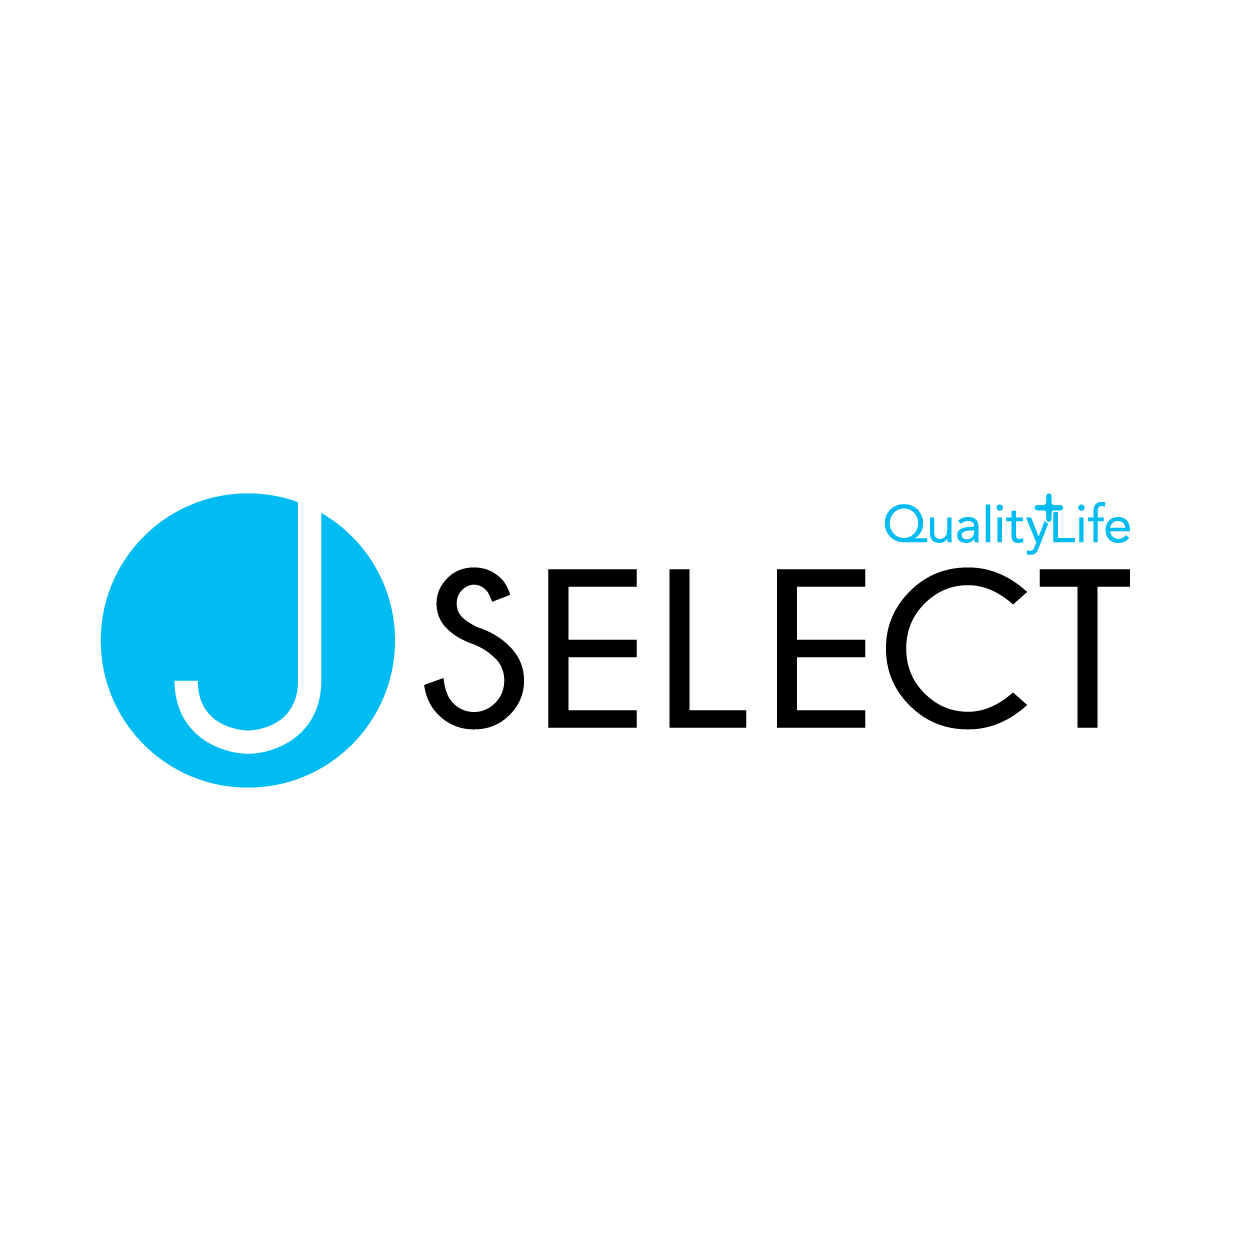 J Select Quality Life